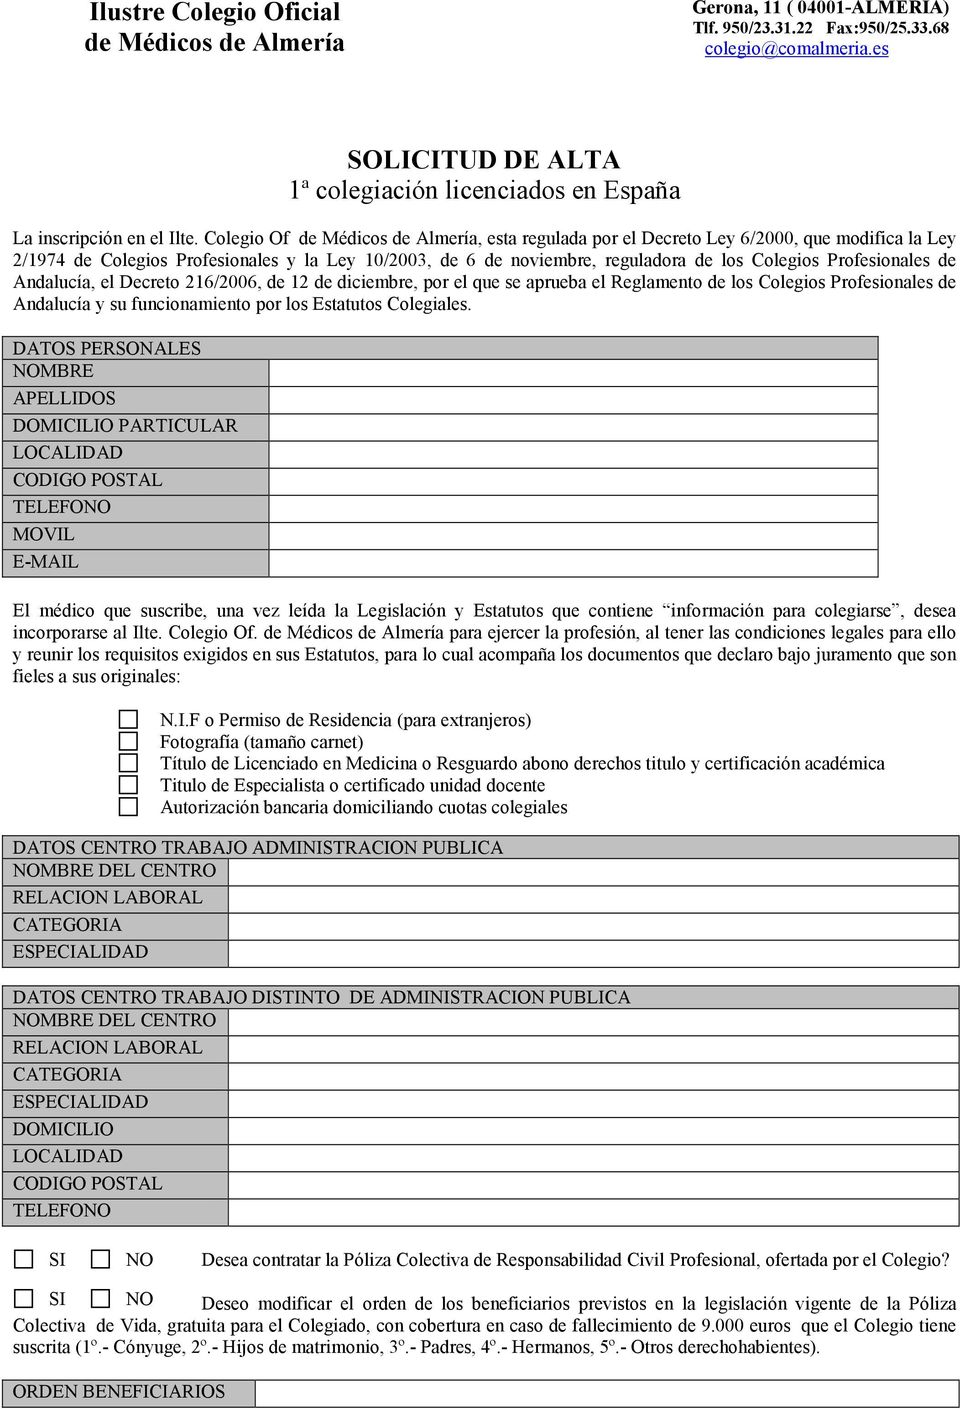 el Decreto 216/2006, de 12 de diciembre, por el que se aprueba el Reglamento de los Colegios Profesionales de Andalucía y su funcionamiento por los Estatutos Colegiales.